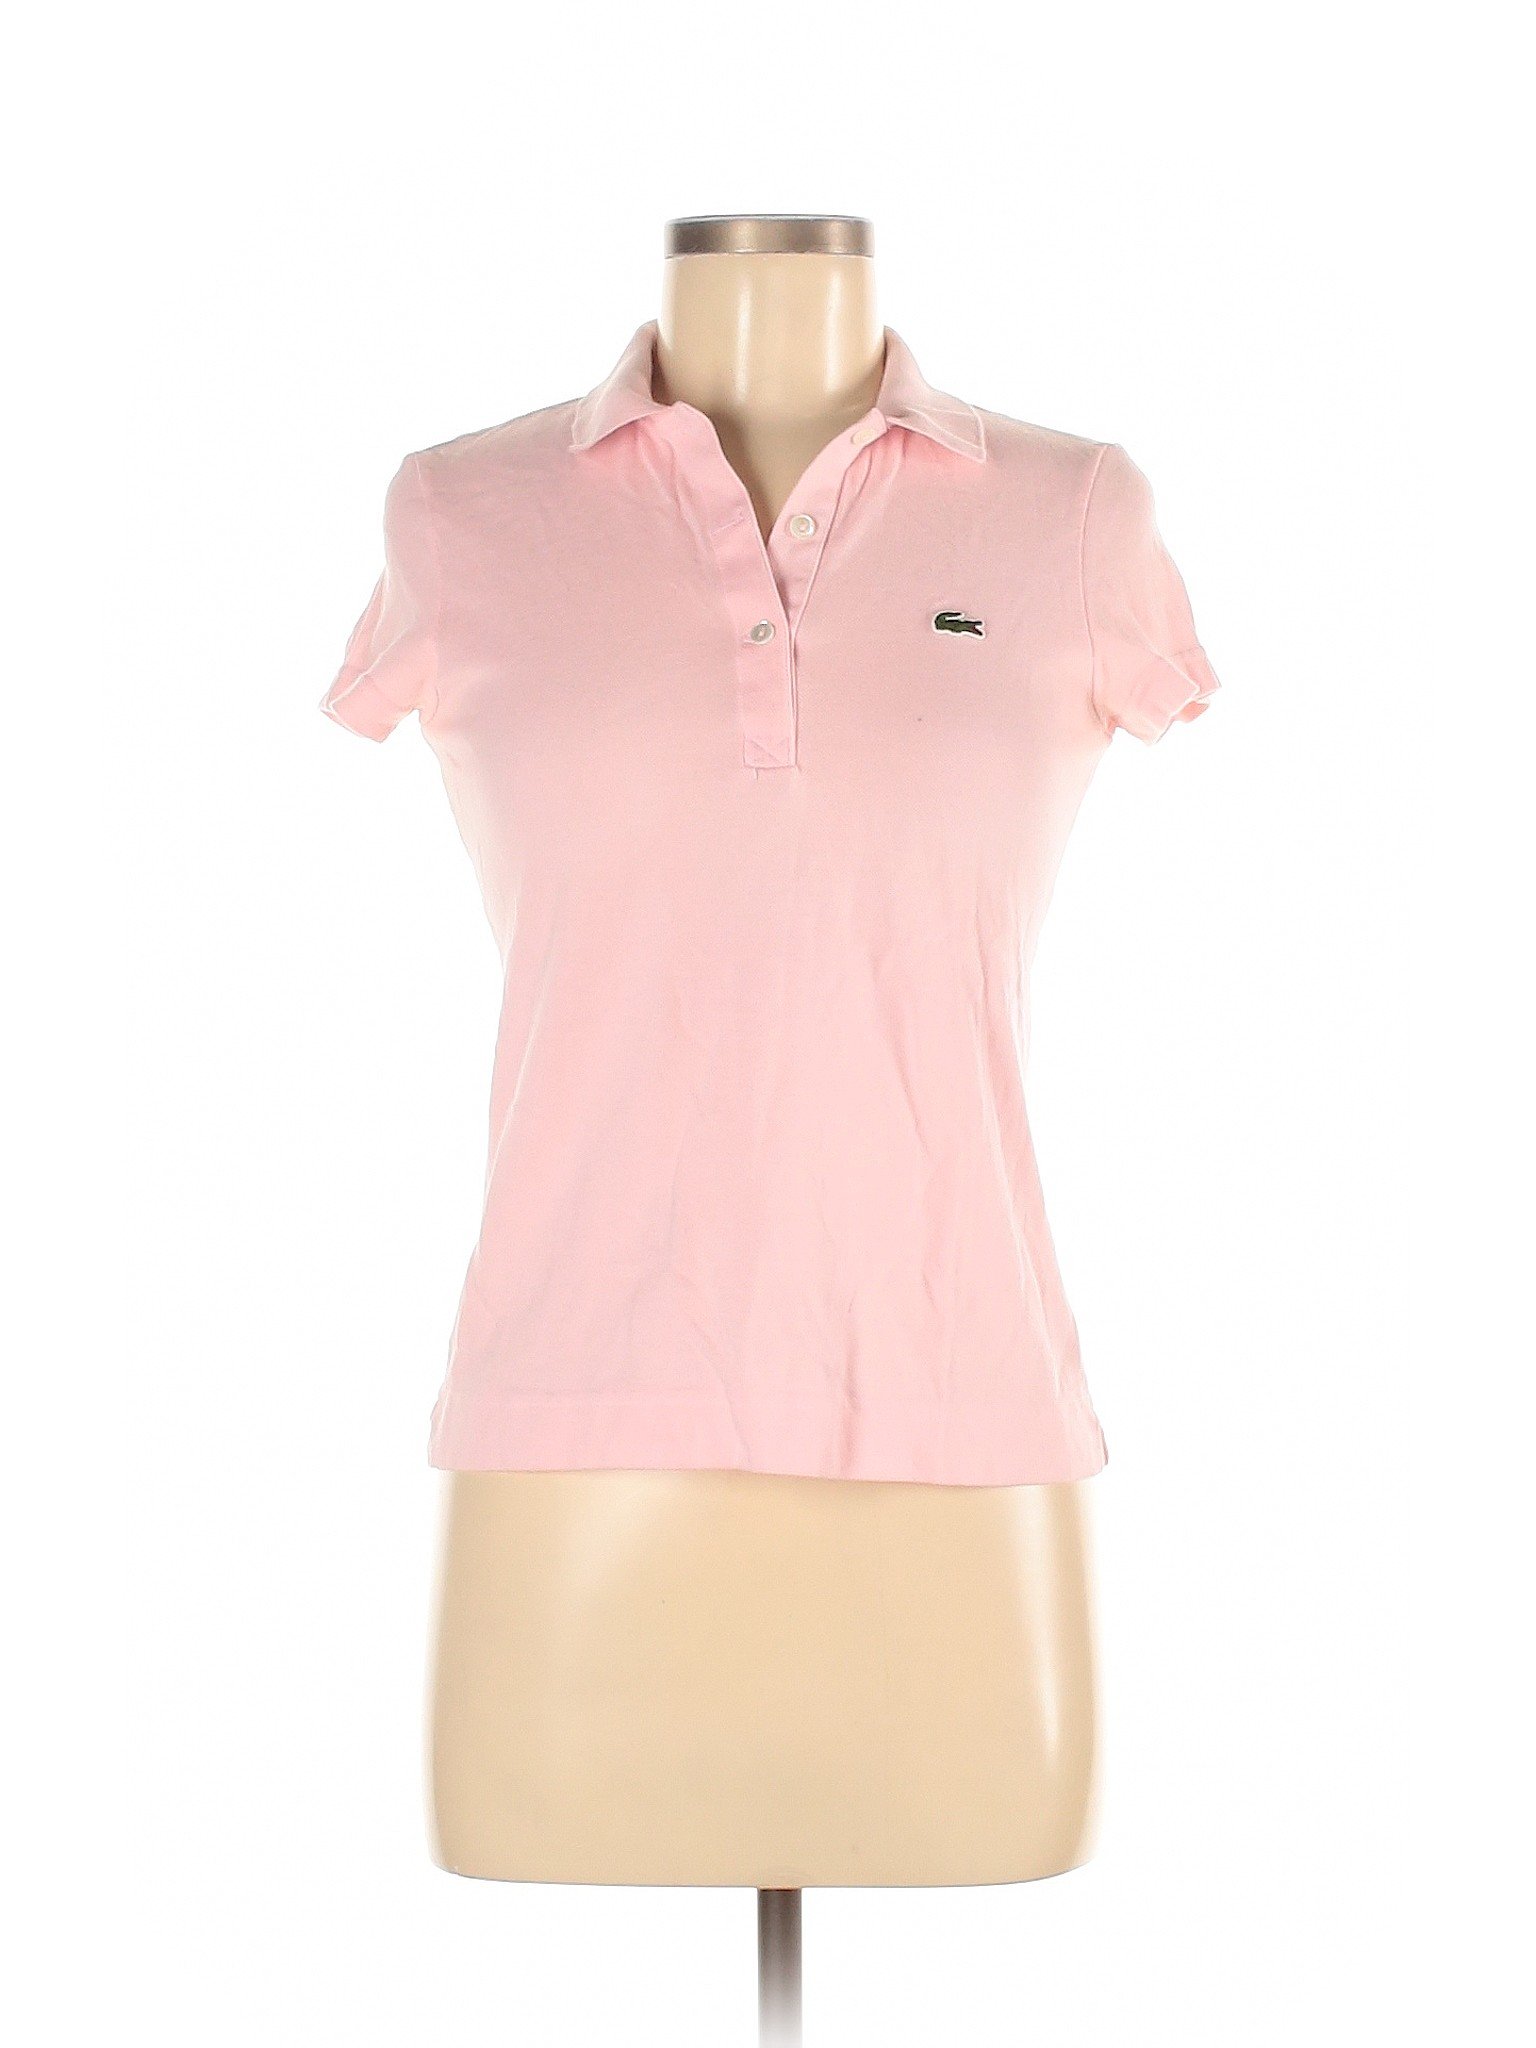 Lacoste Women Pink Short Sleeve Polo 38 eur | eBay